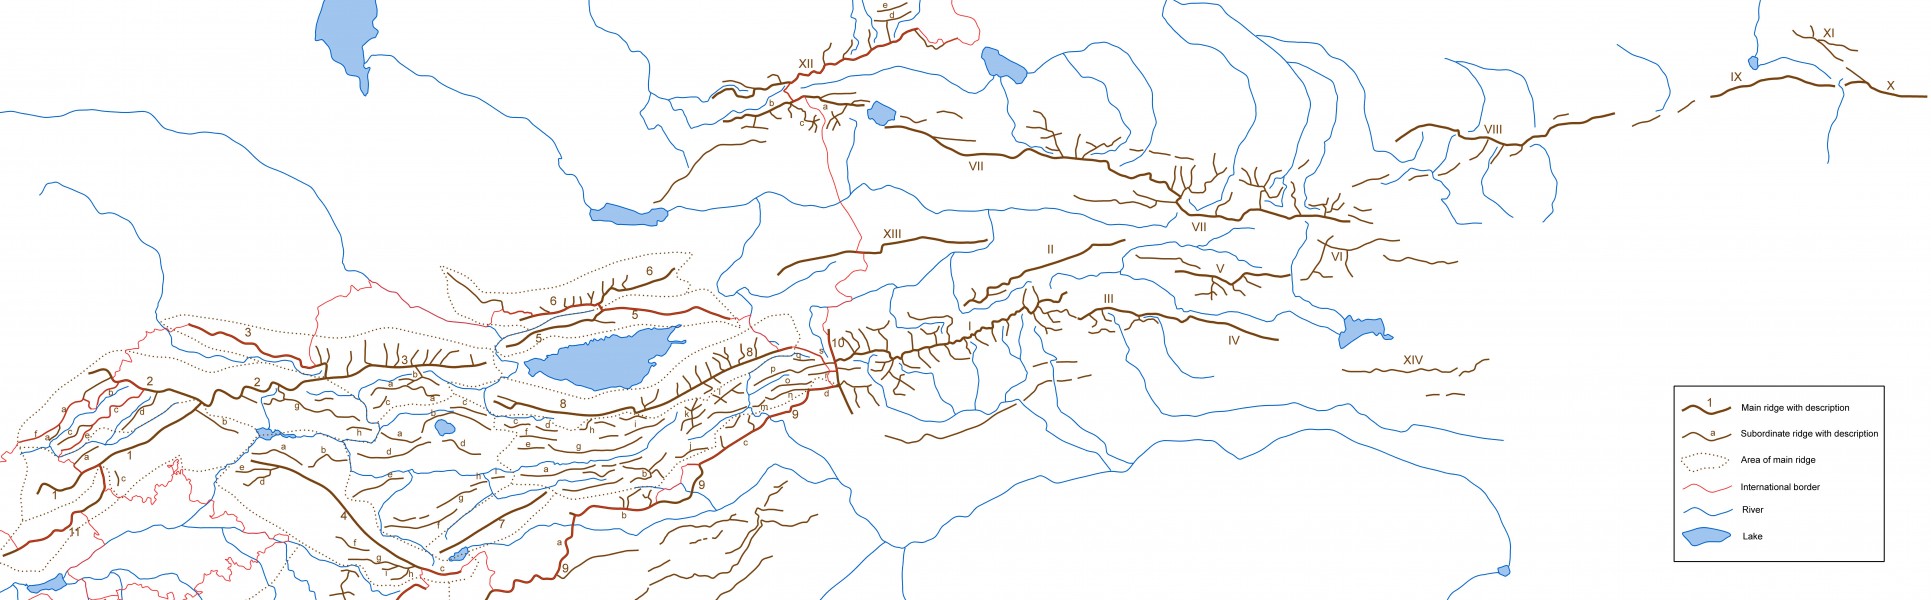 Ridges of Tien Shan